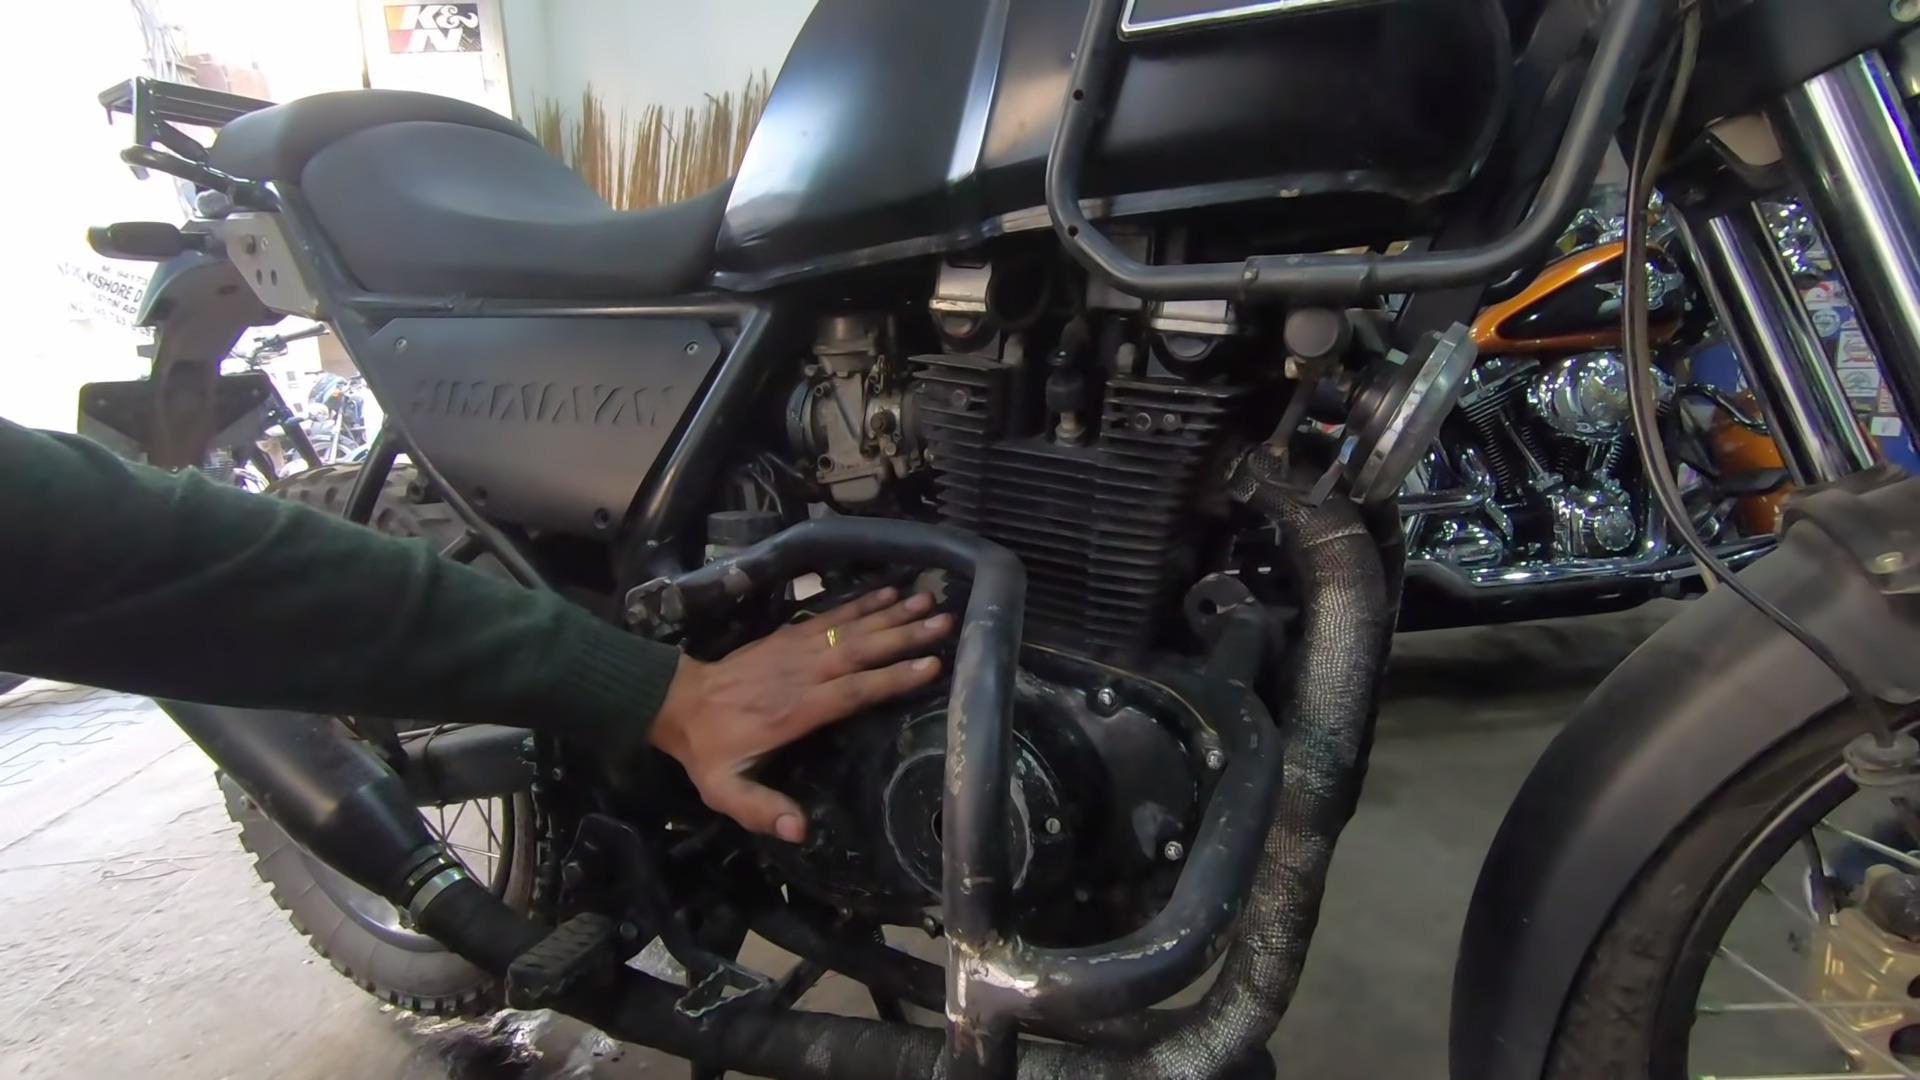 400cc Twin-Cylinder Royal Enfield Himalayan Details & Video - closeup